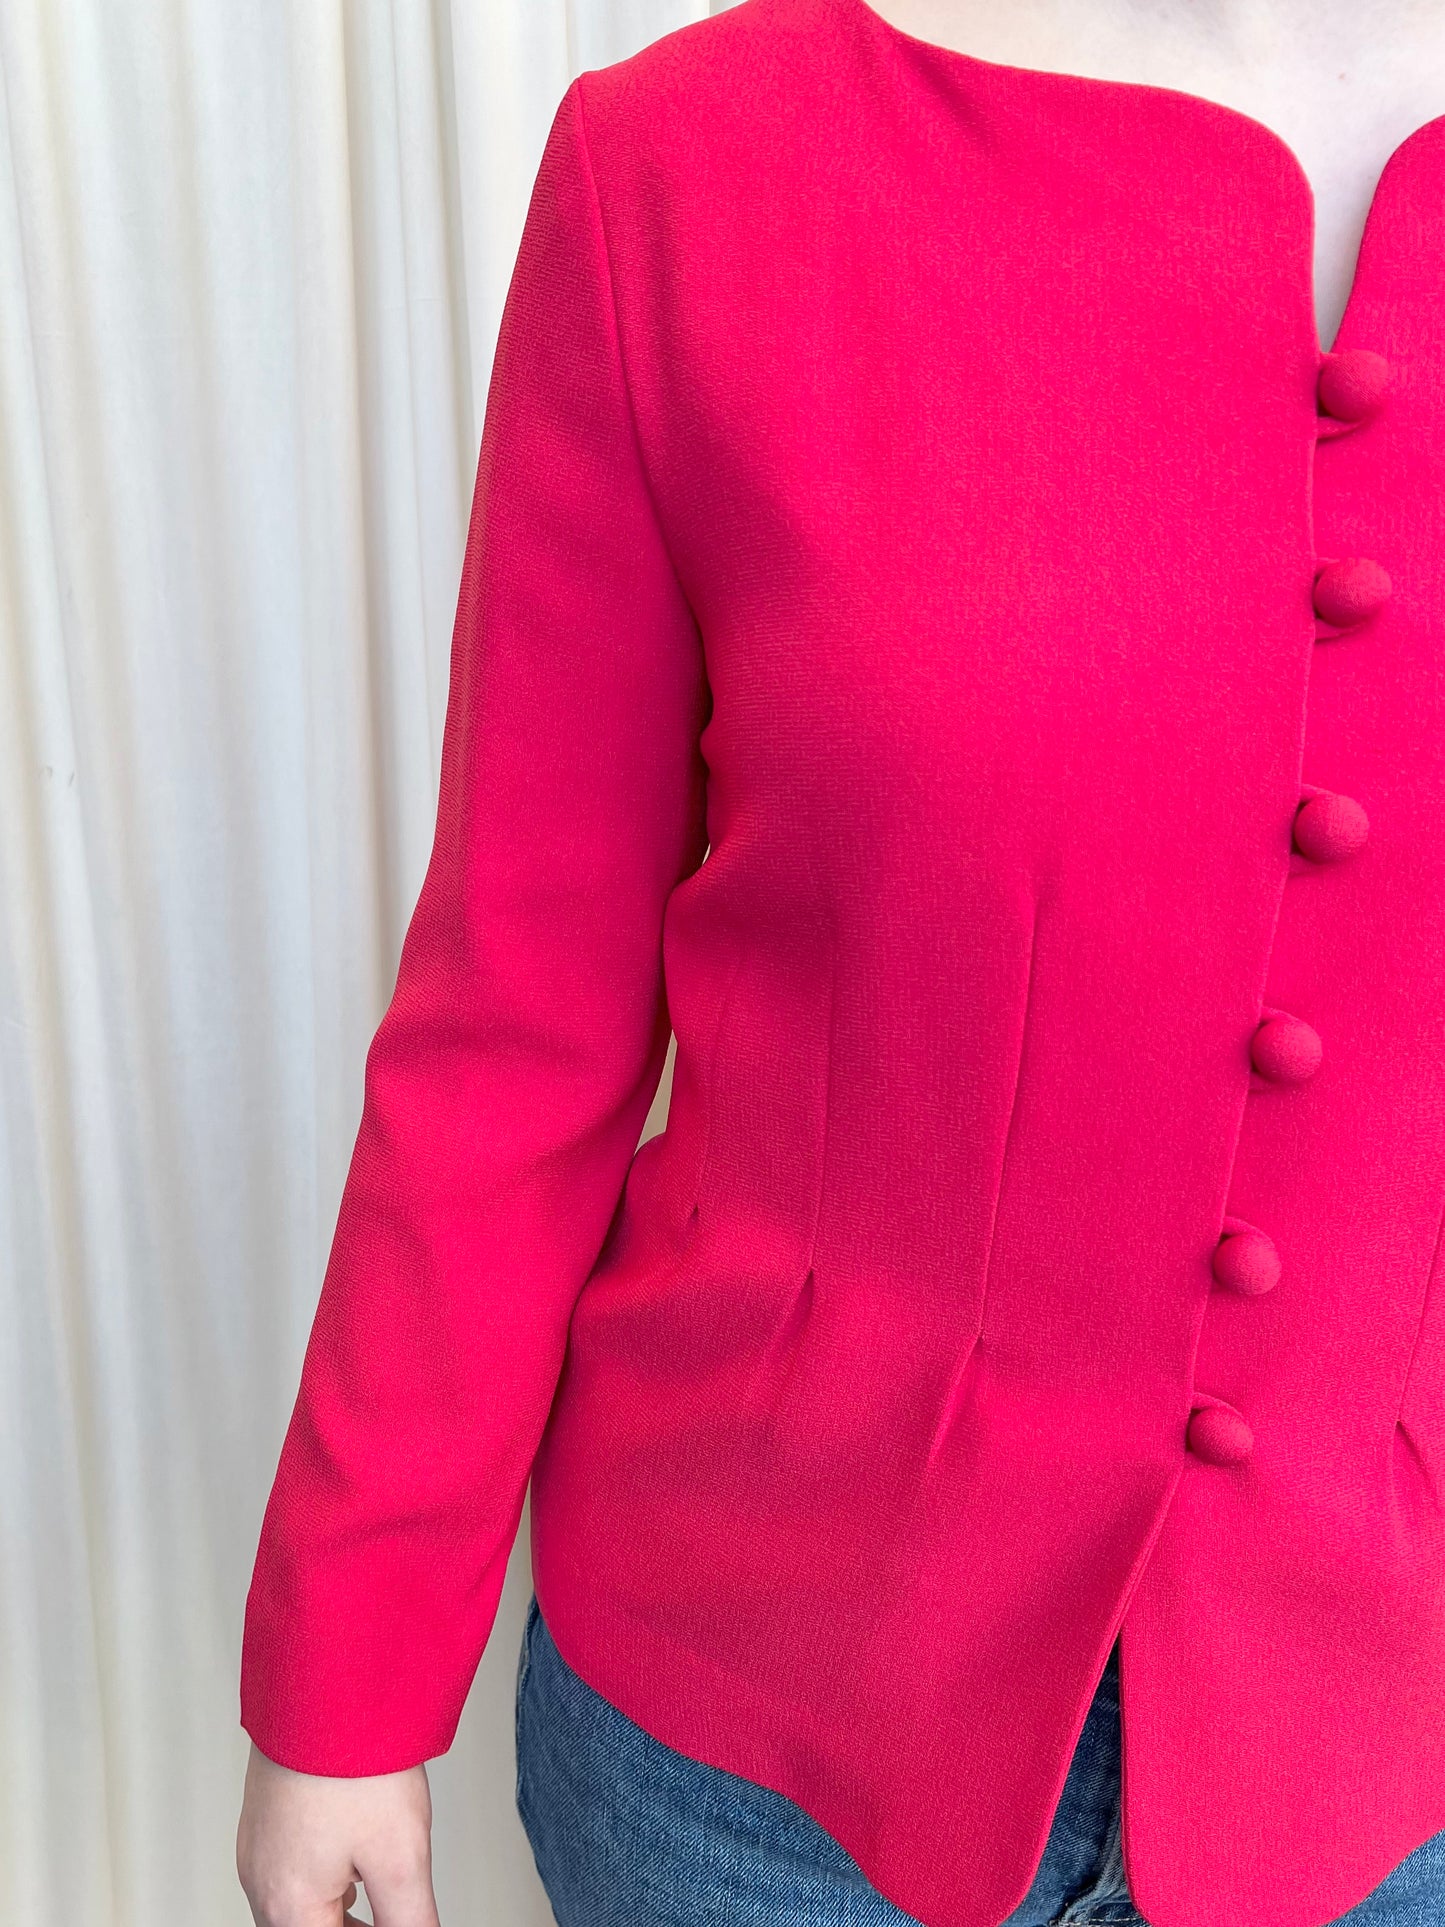 Vintage Hot Pink Jacket - 4